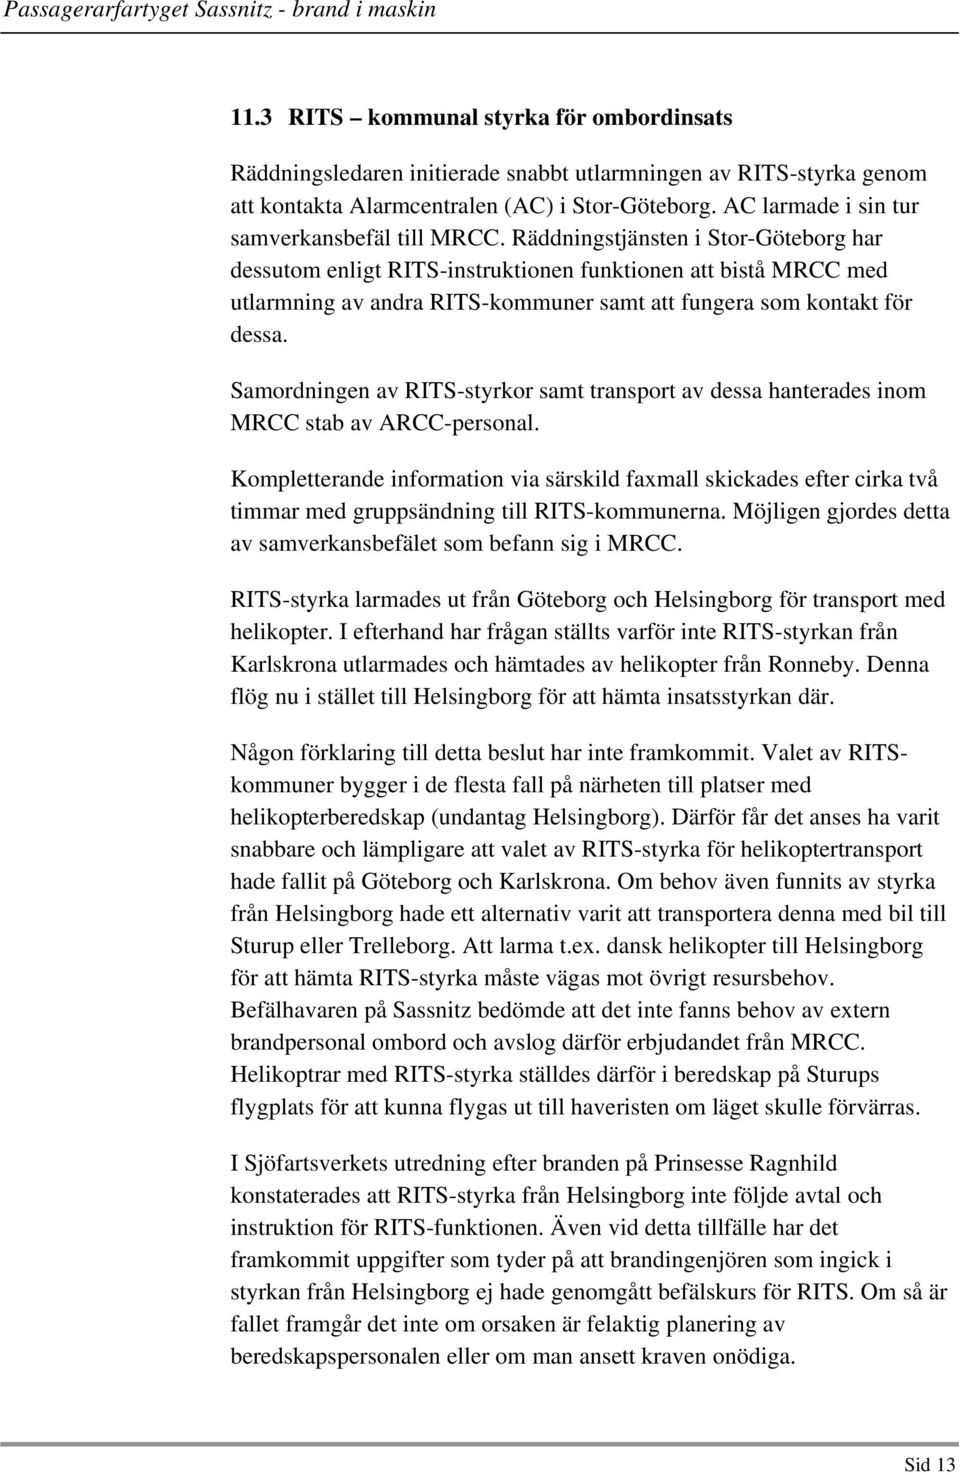 Räddningstjänsten i Stor-Göteborg har dessutom enligt RITS-instruktionen funktionen att bistå MRCC med utlarmning av andra RITS-kommuner samt att fungera som kontakt för dessa.